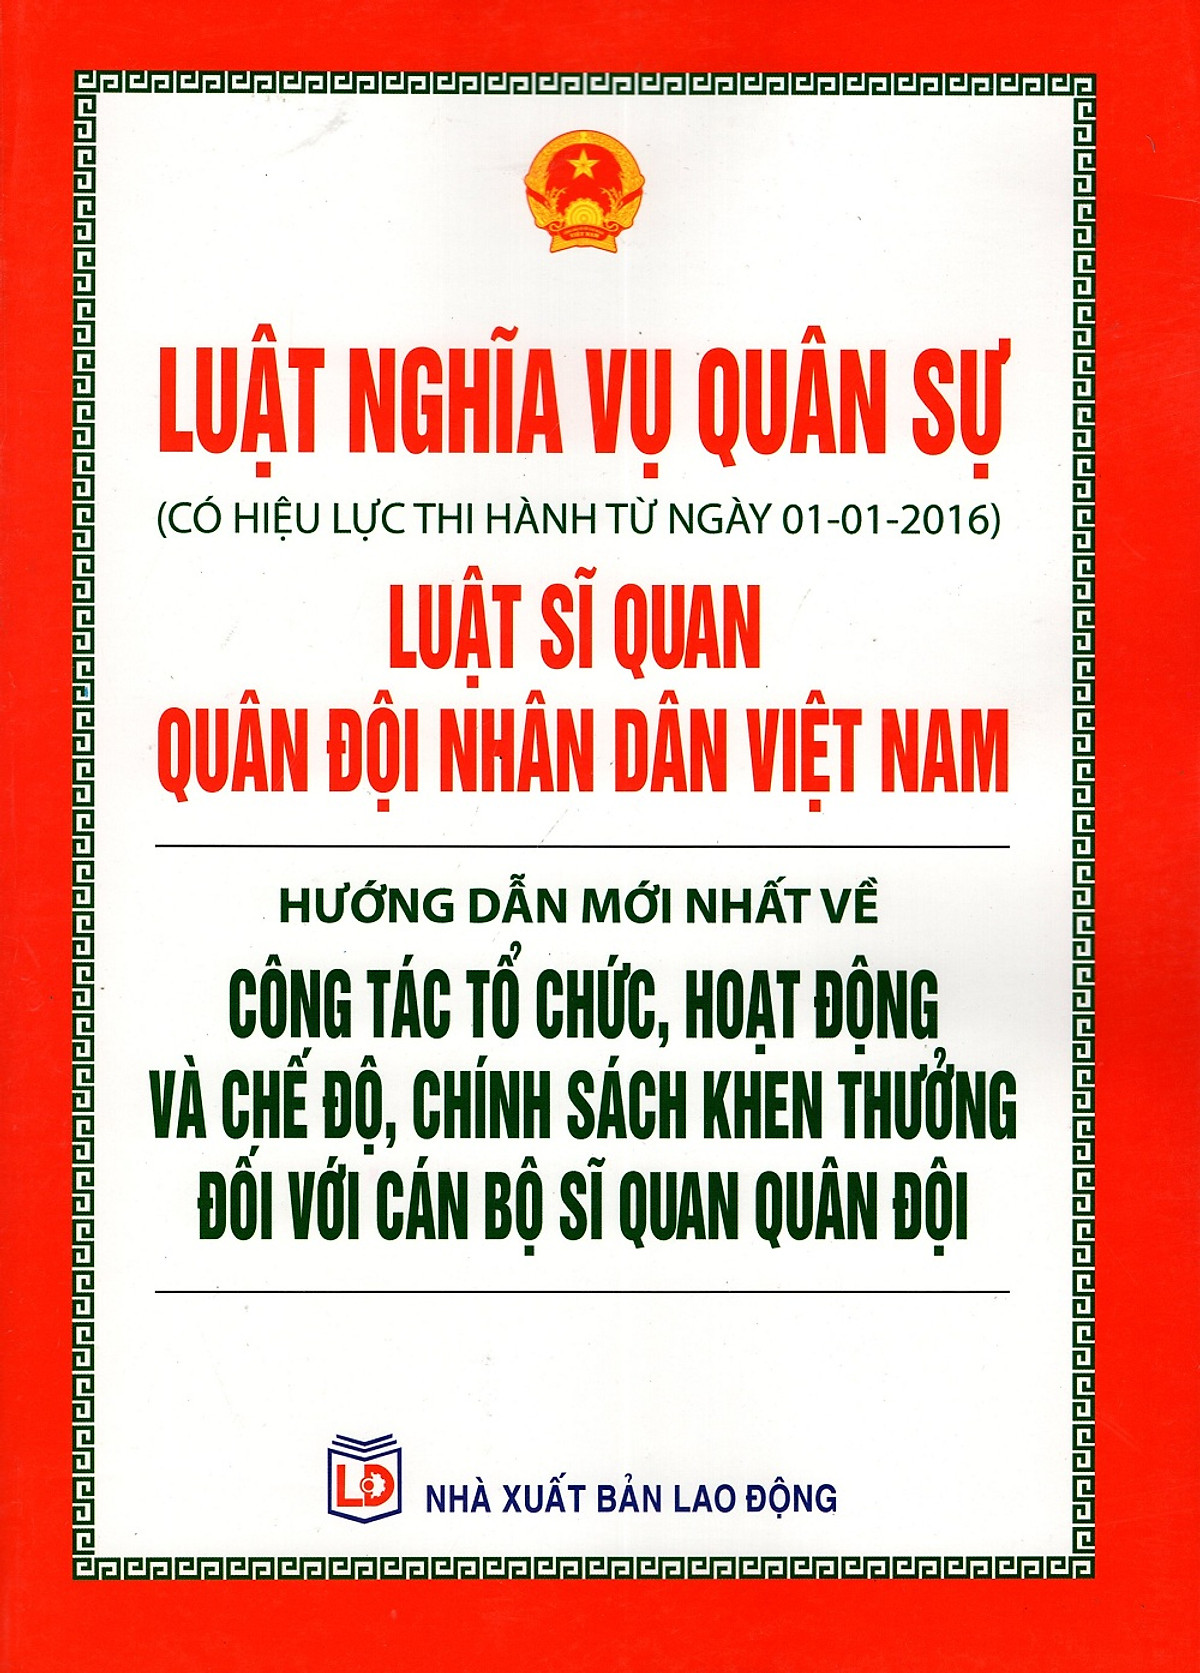 Luật Nghĩa Vụ Quân Sự - Luật Sĩ Quan Quân Đội Nhân Dân Việt Nam - Hướng Dẫn Mới Nhất Về Công Tác Tổ Chức, Hoạt Động Và Chế Độ, Chính Sách Khen Thưởng Đối Với Cán Bộ Sĩ Quan Quân Đội